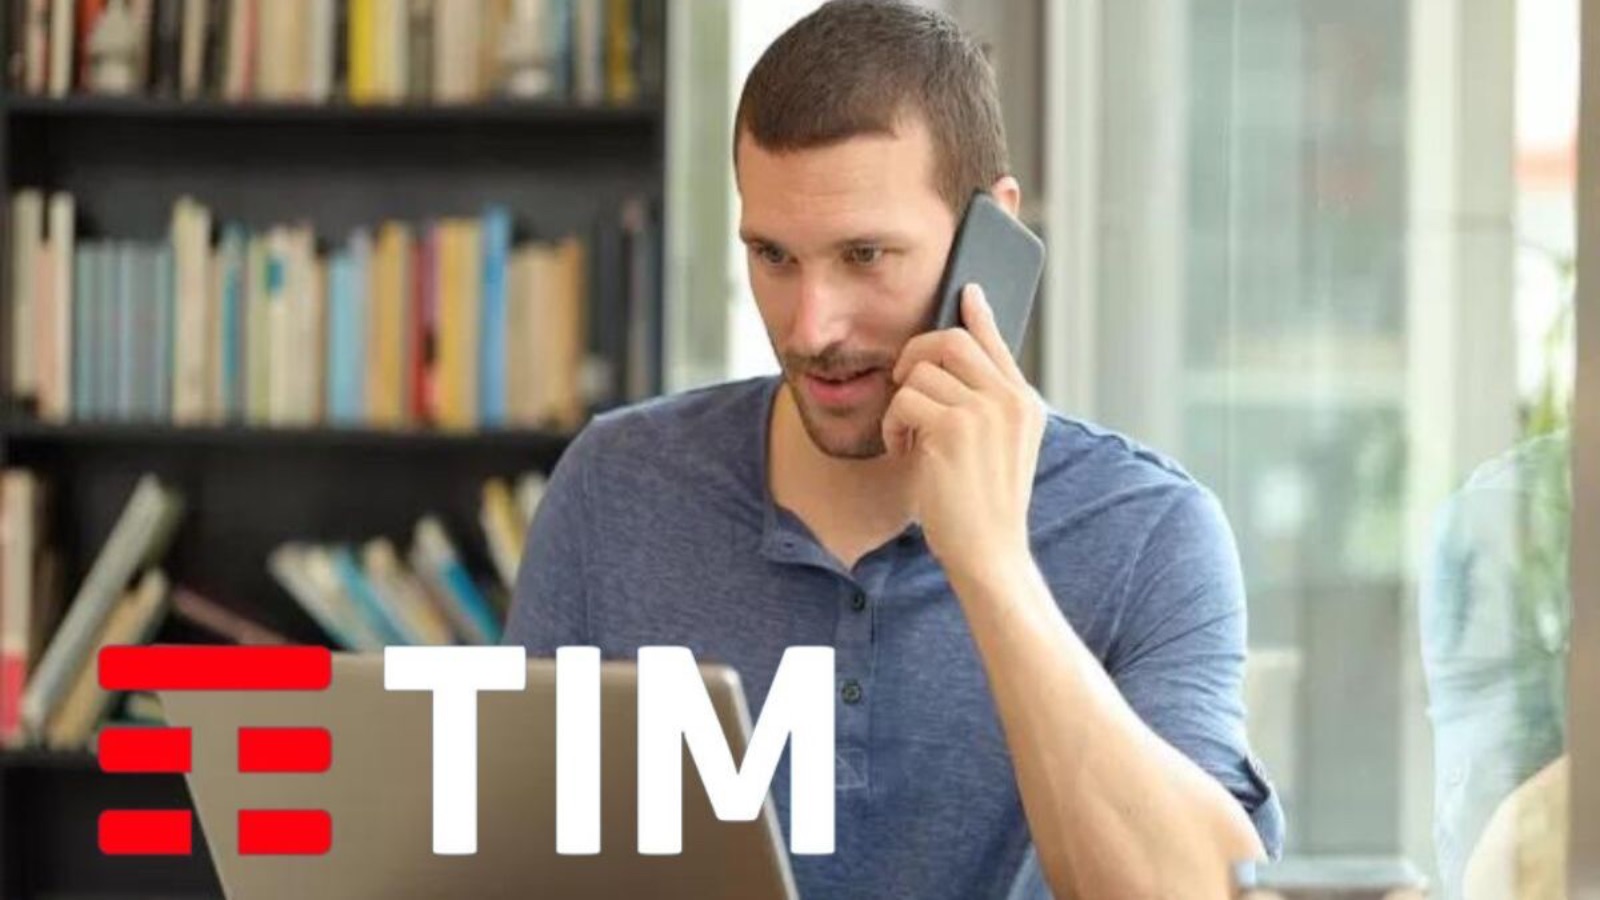 TIM offre le Power da 6 EURO al mese, ci sono 150 GB